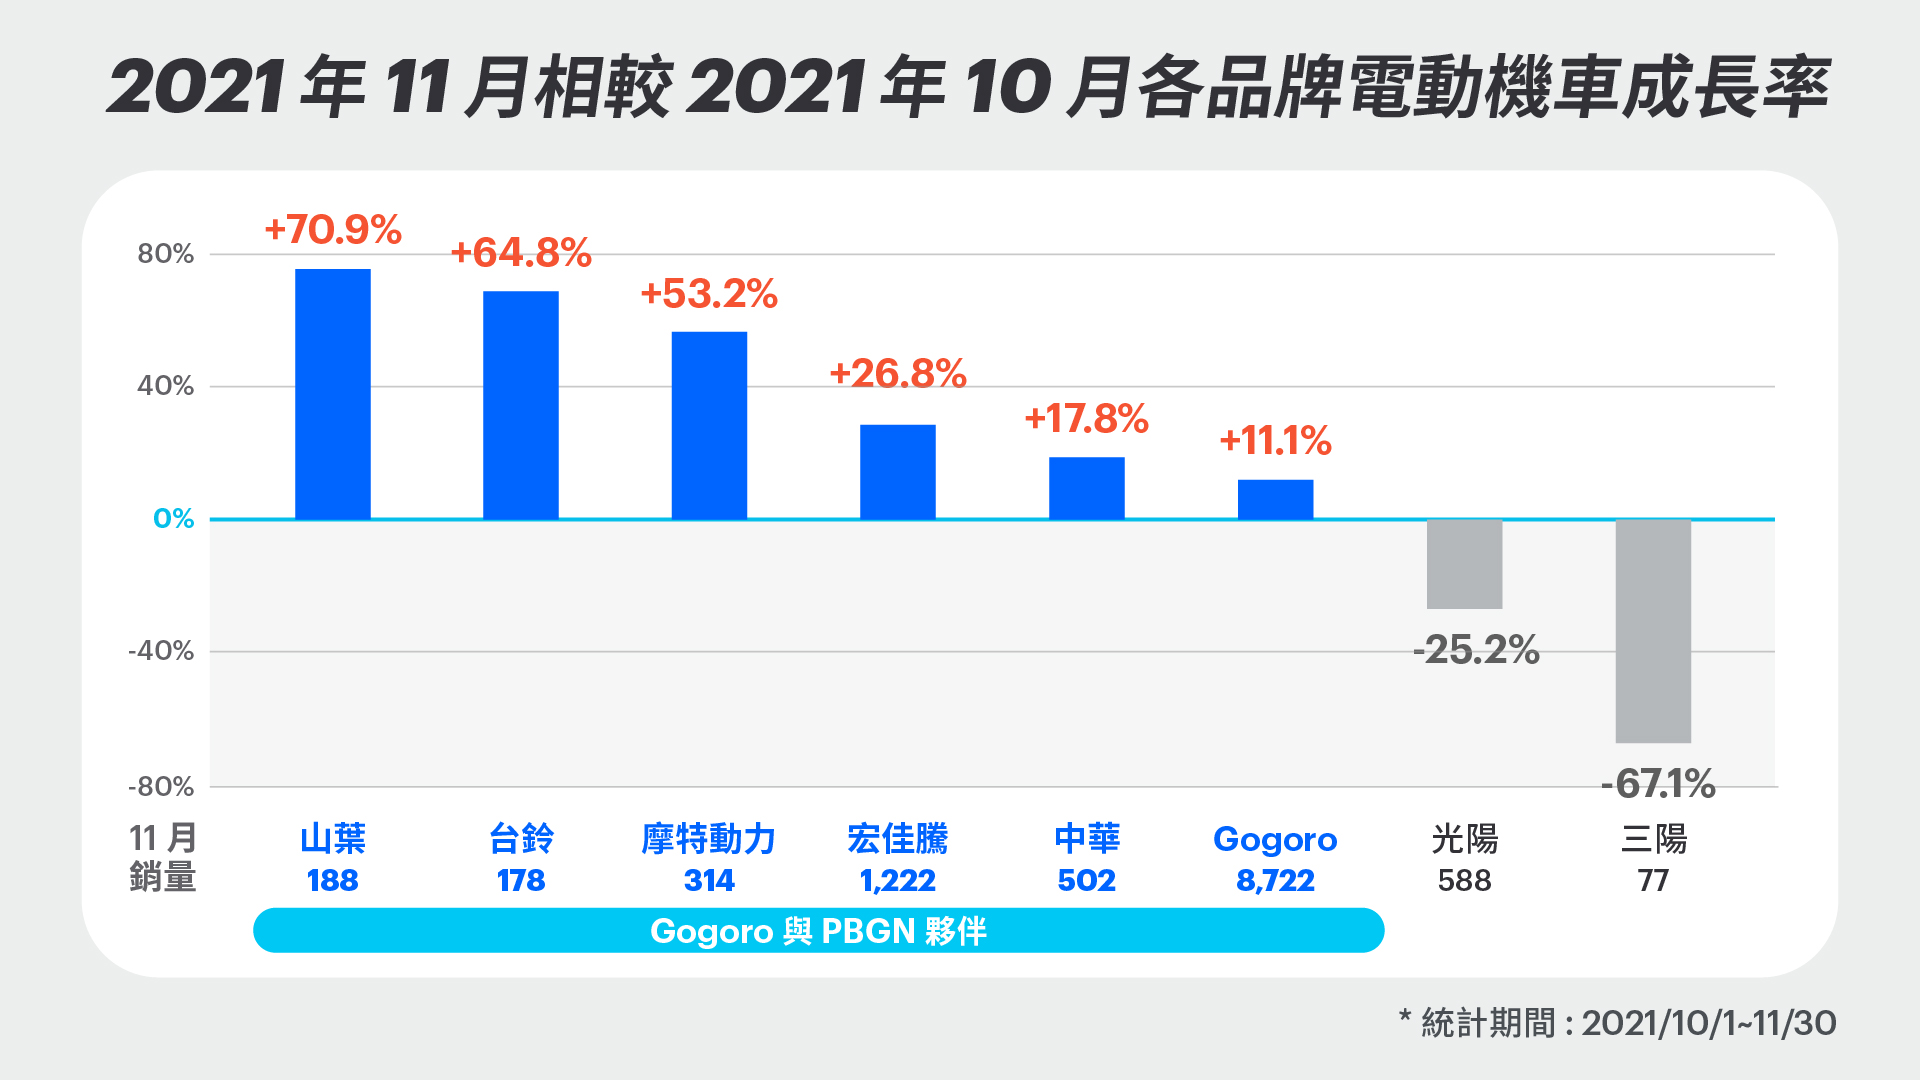 2021 年 11 月相較 2021 年 10 月各品牌電動機車成長率